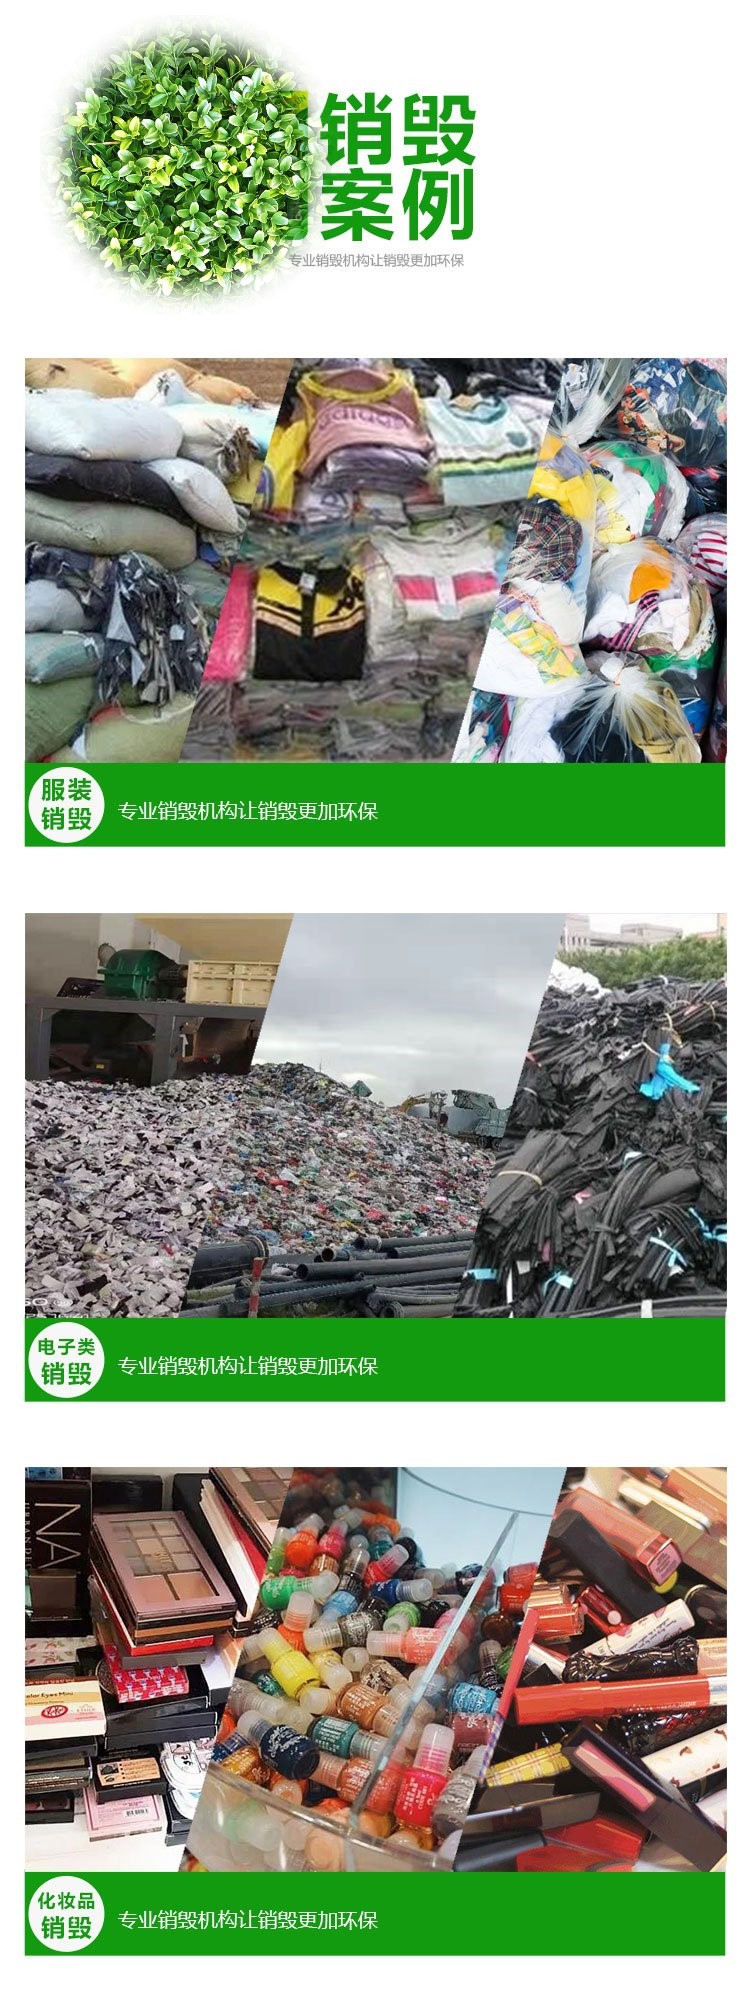 广州越秀区废弃货物销毁处置报废单位环保焚烧无害化处置